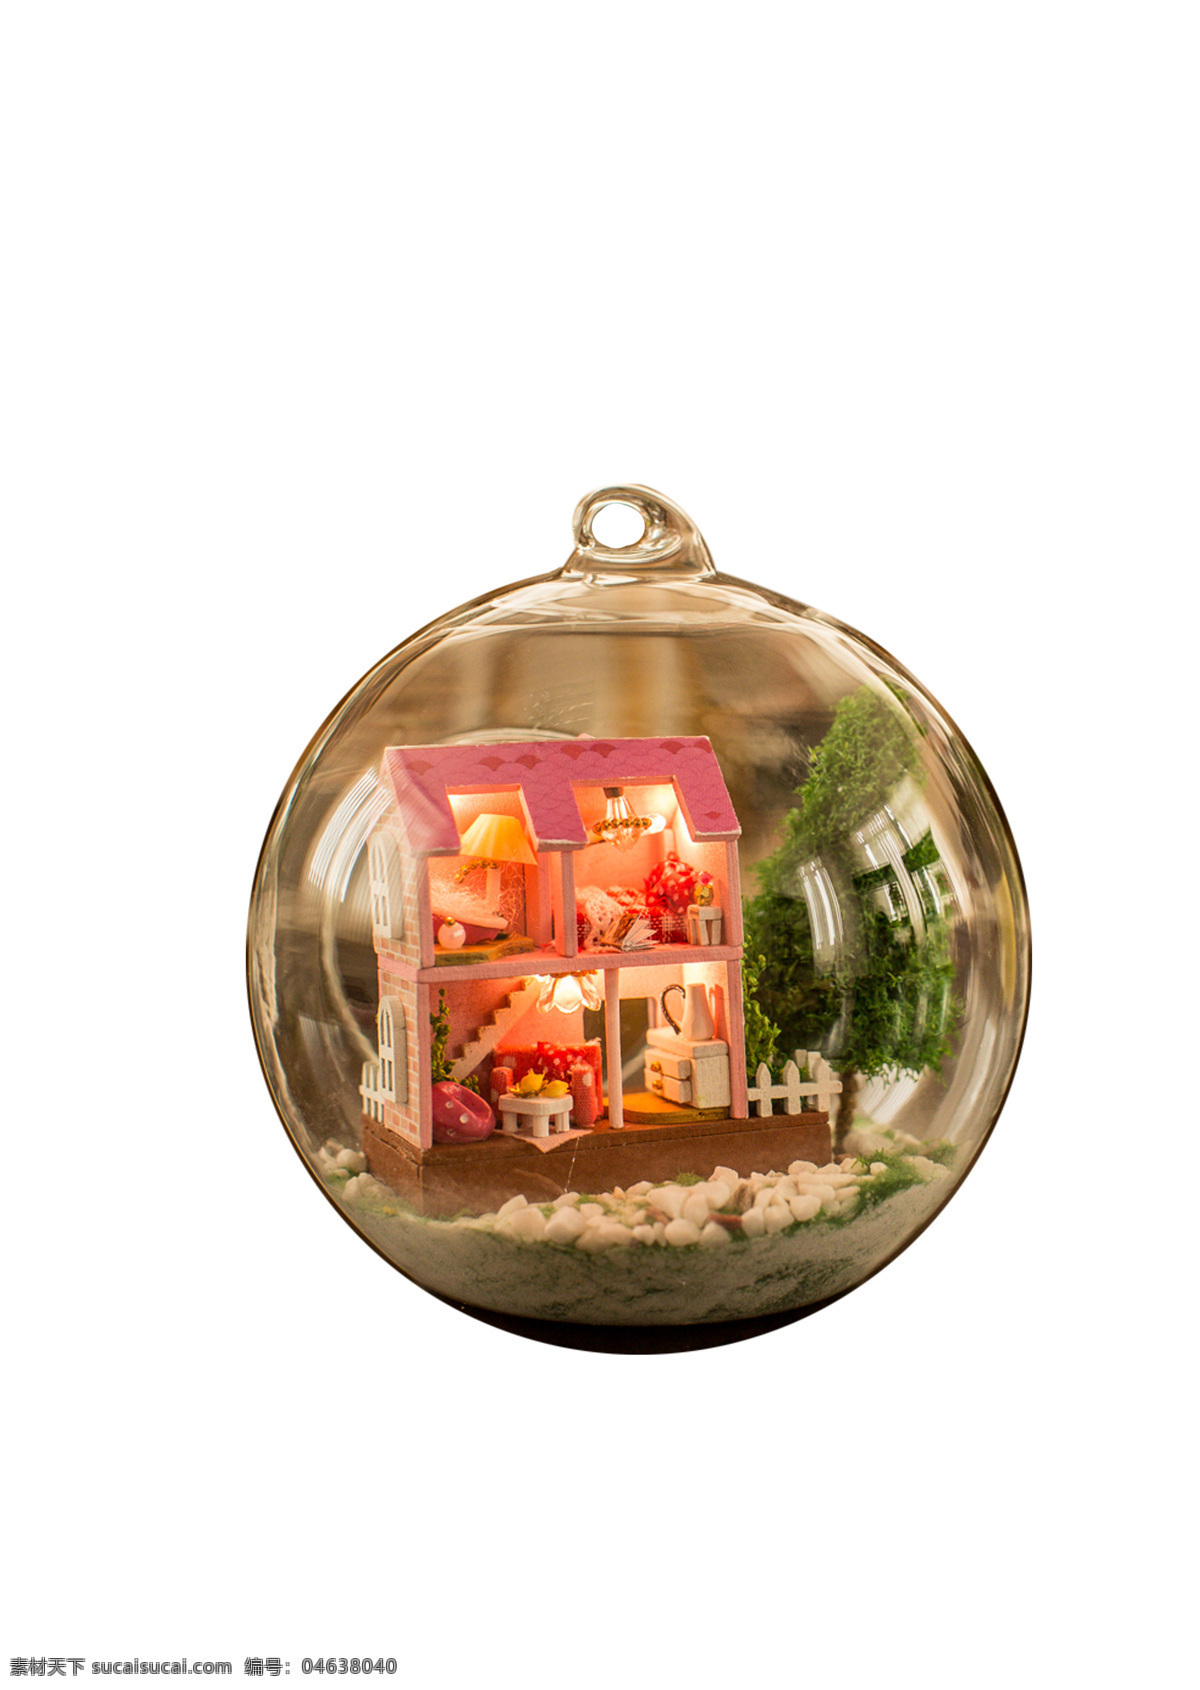 水晶球 房子 玩具 水晶球房子 圣诞水晶球 房子玩具 小水晶球 小房子 可爱水晶球 生活百科 生活素材